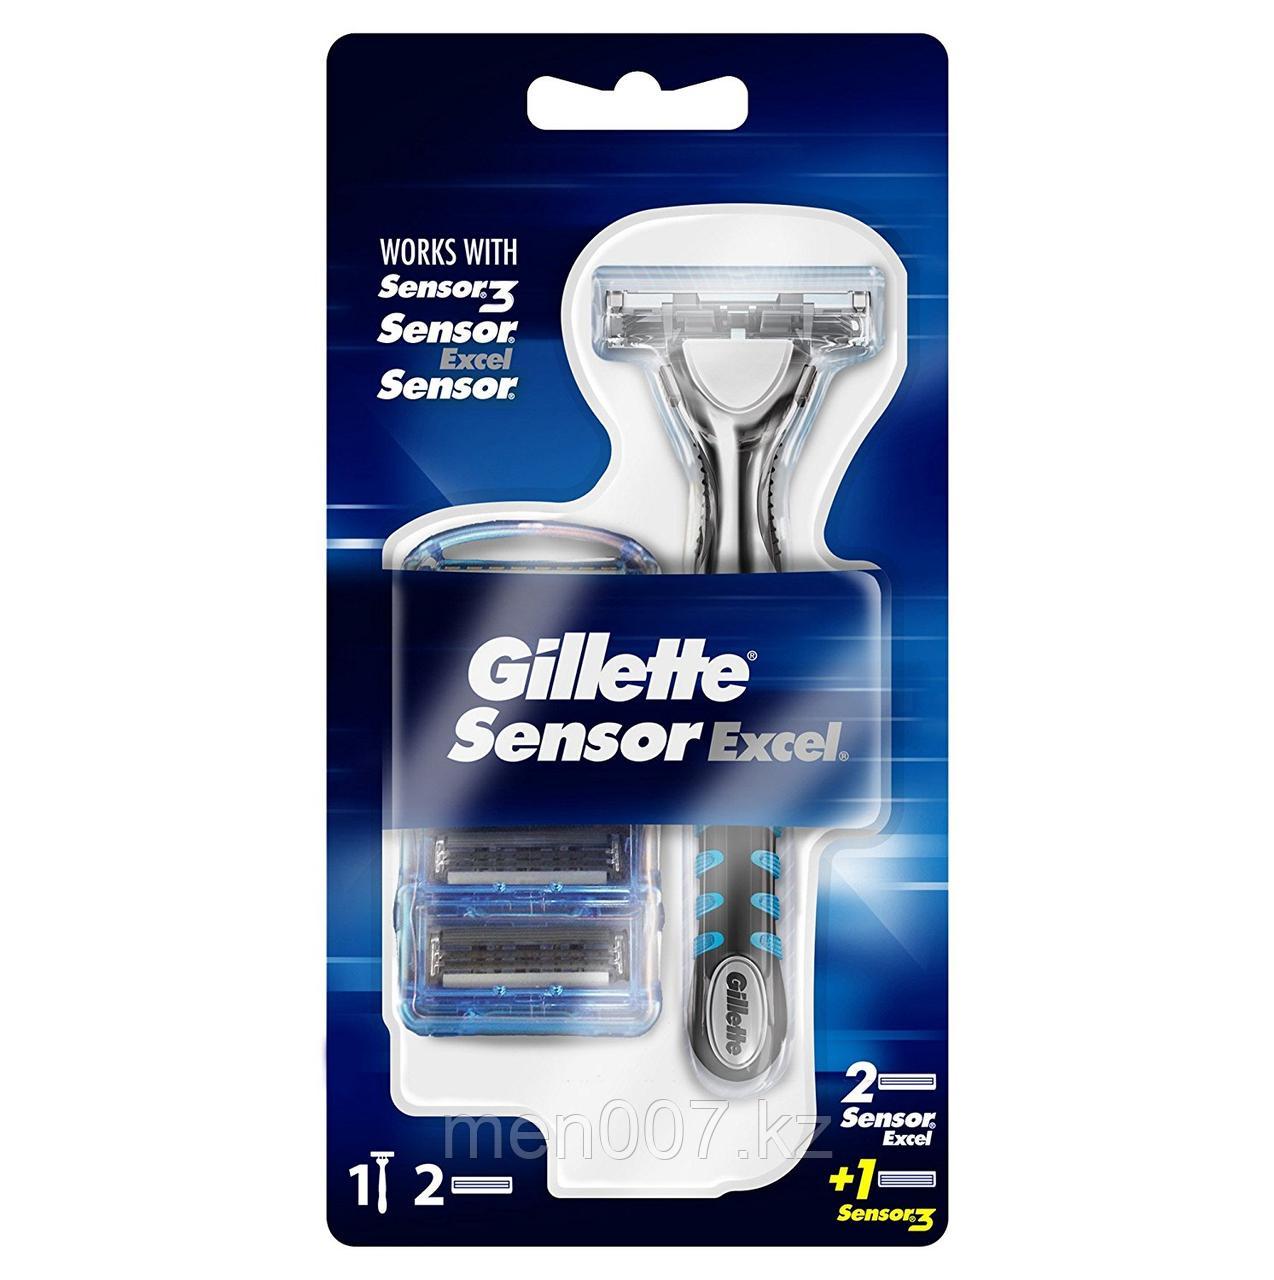 Gillette Sensor Excel с 2 дополнительными кассетами